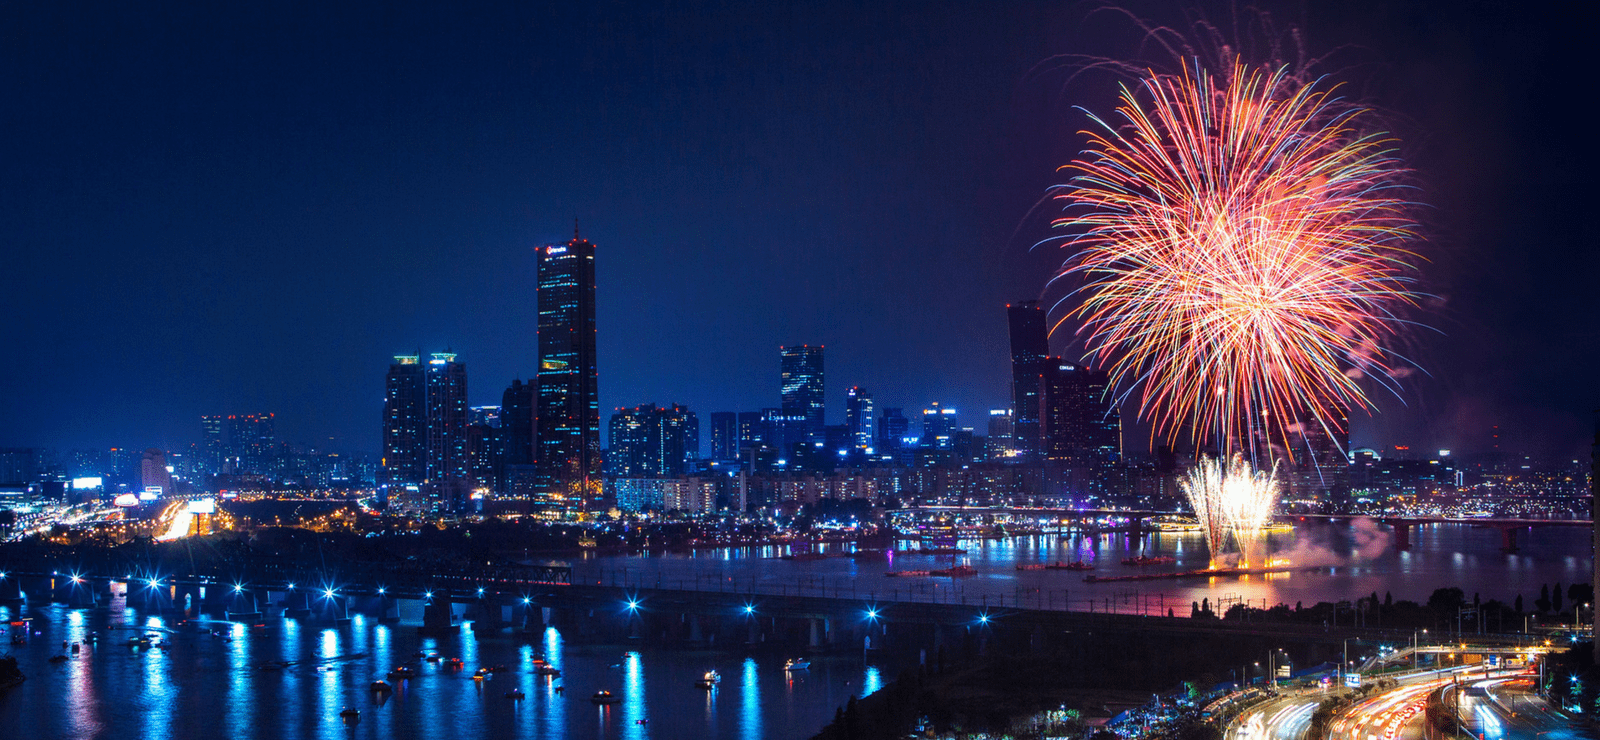 Seoul International Fireworks Festival